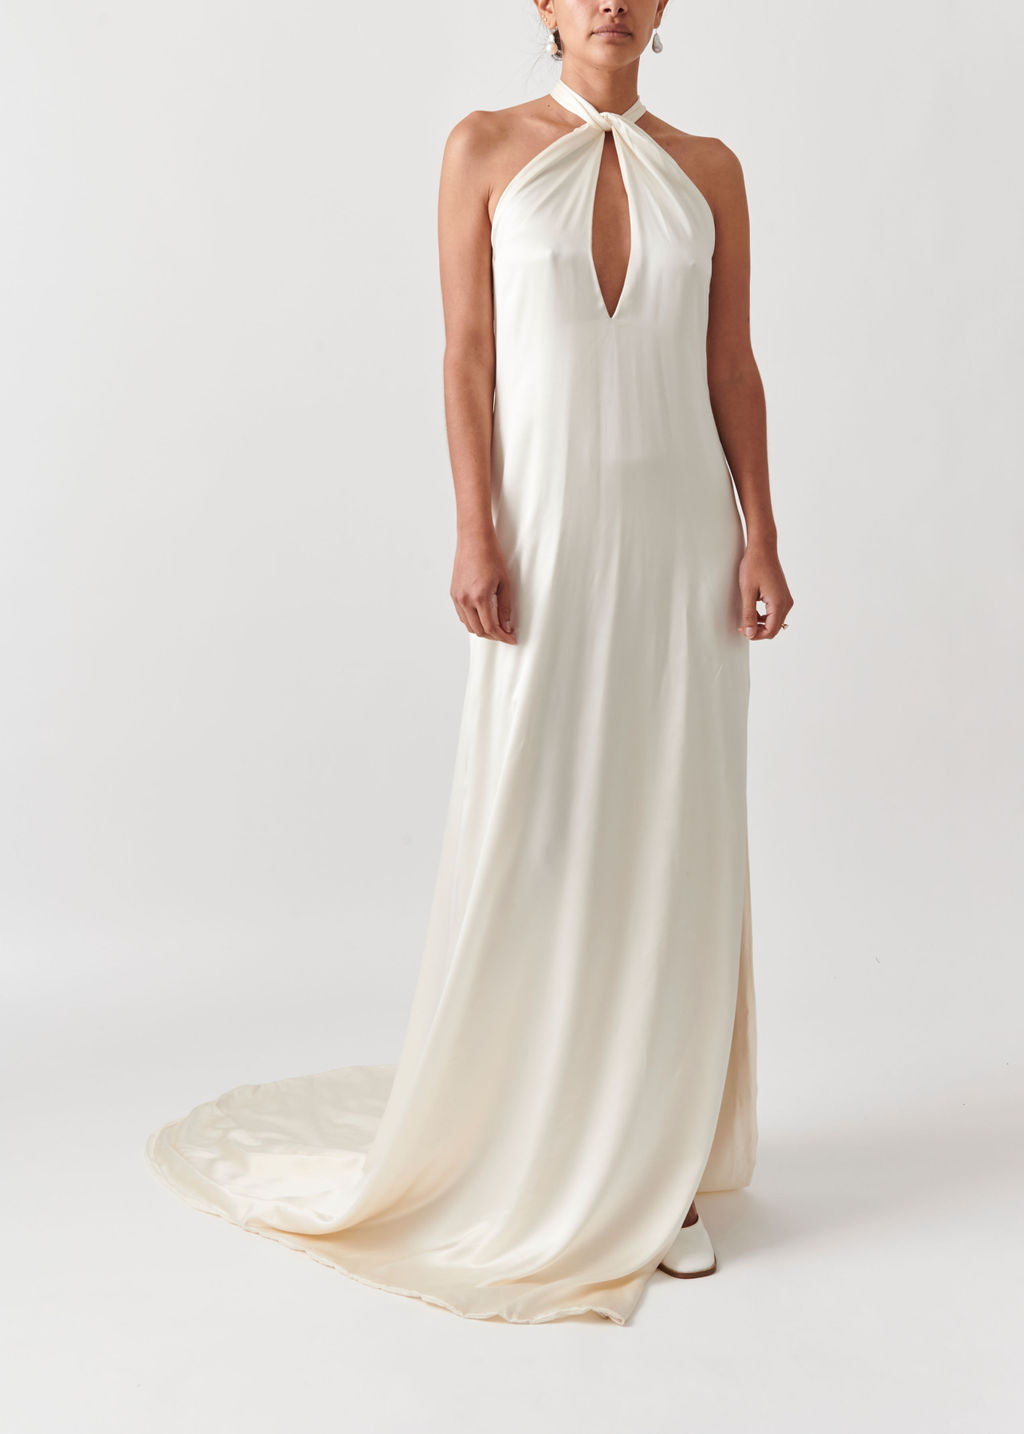 Close View of Athena Retro Silk Wedding Dress